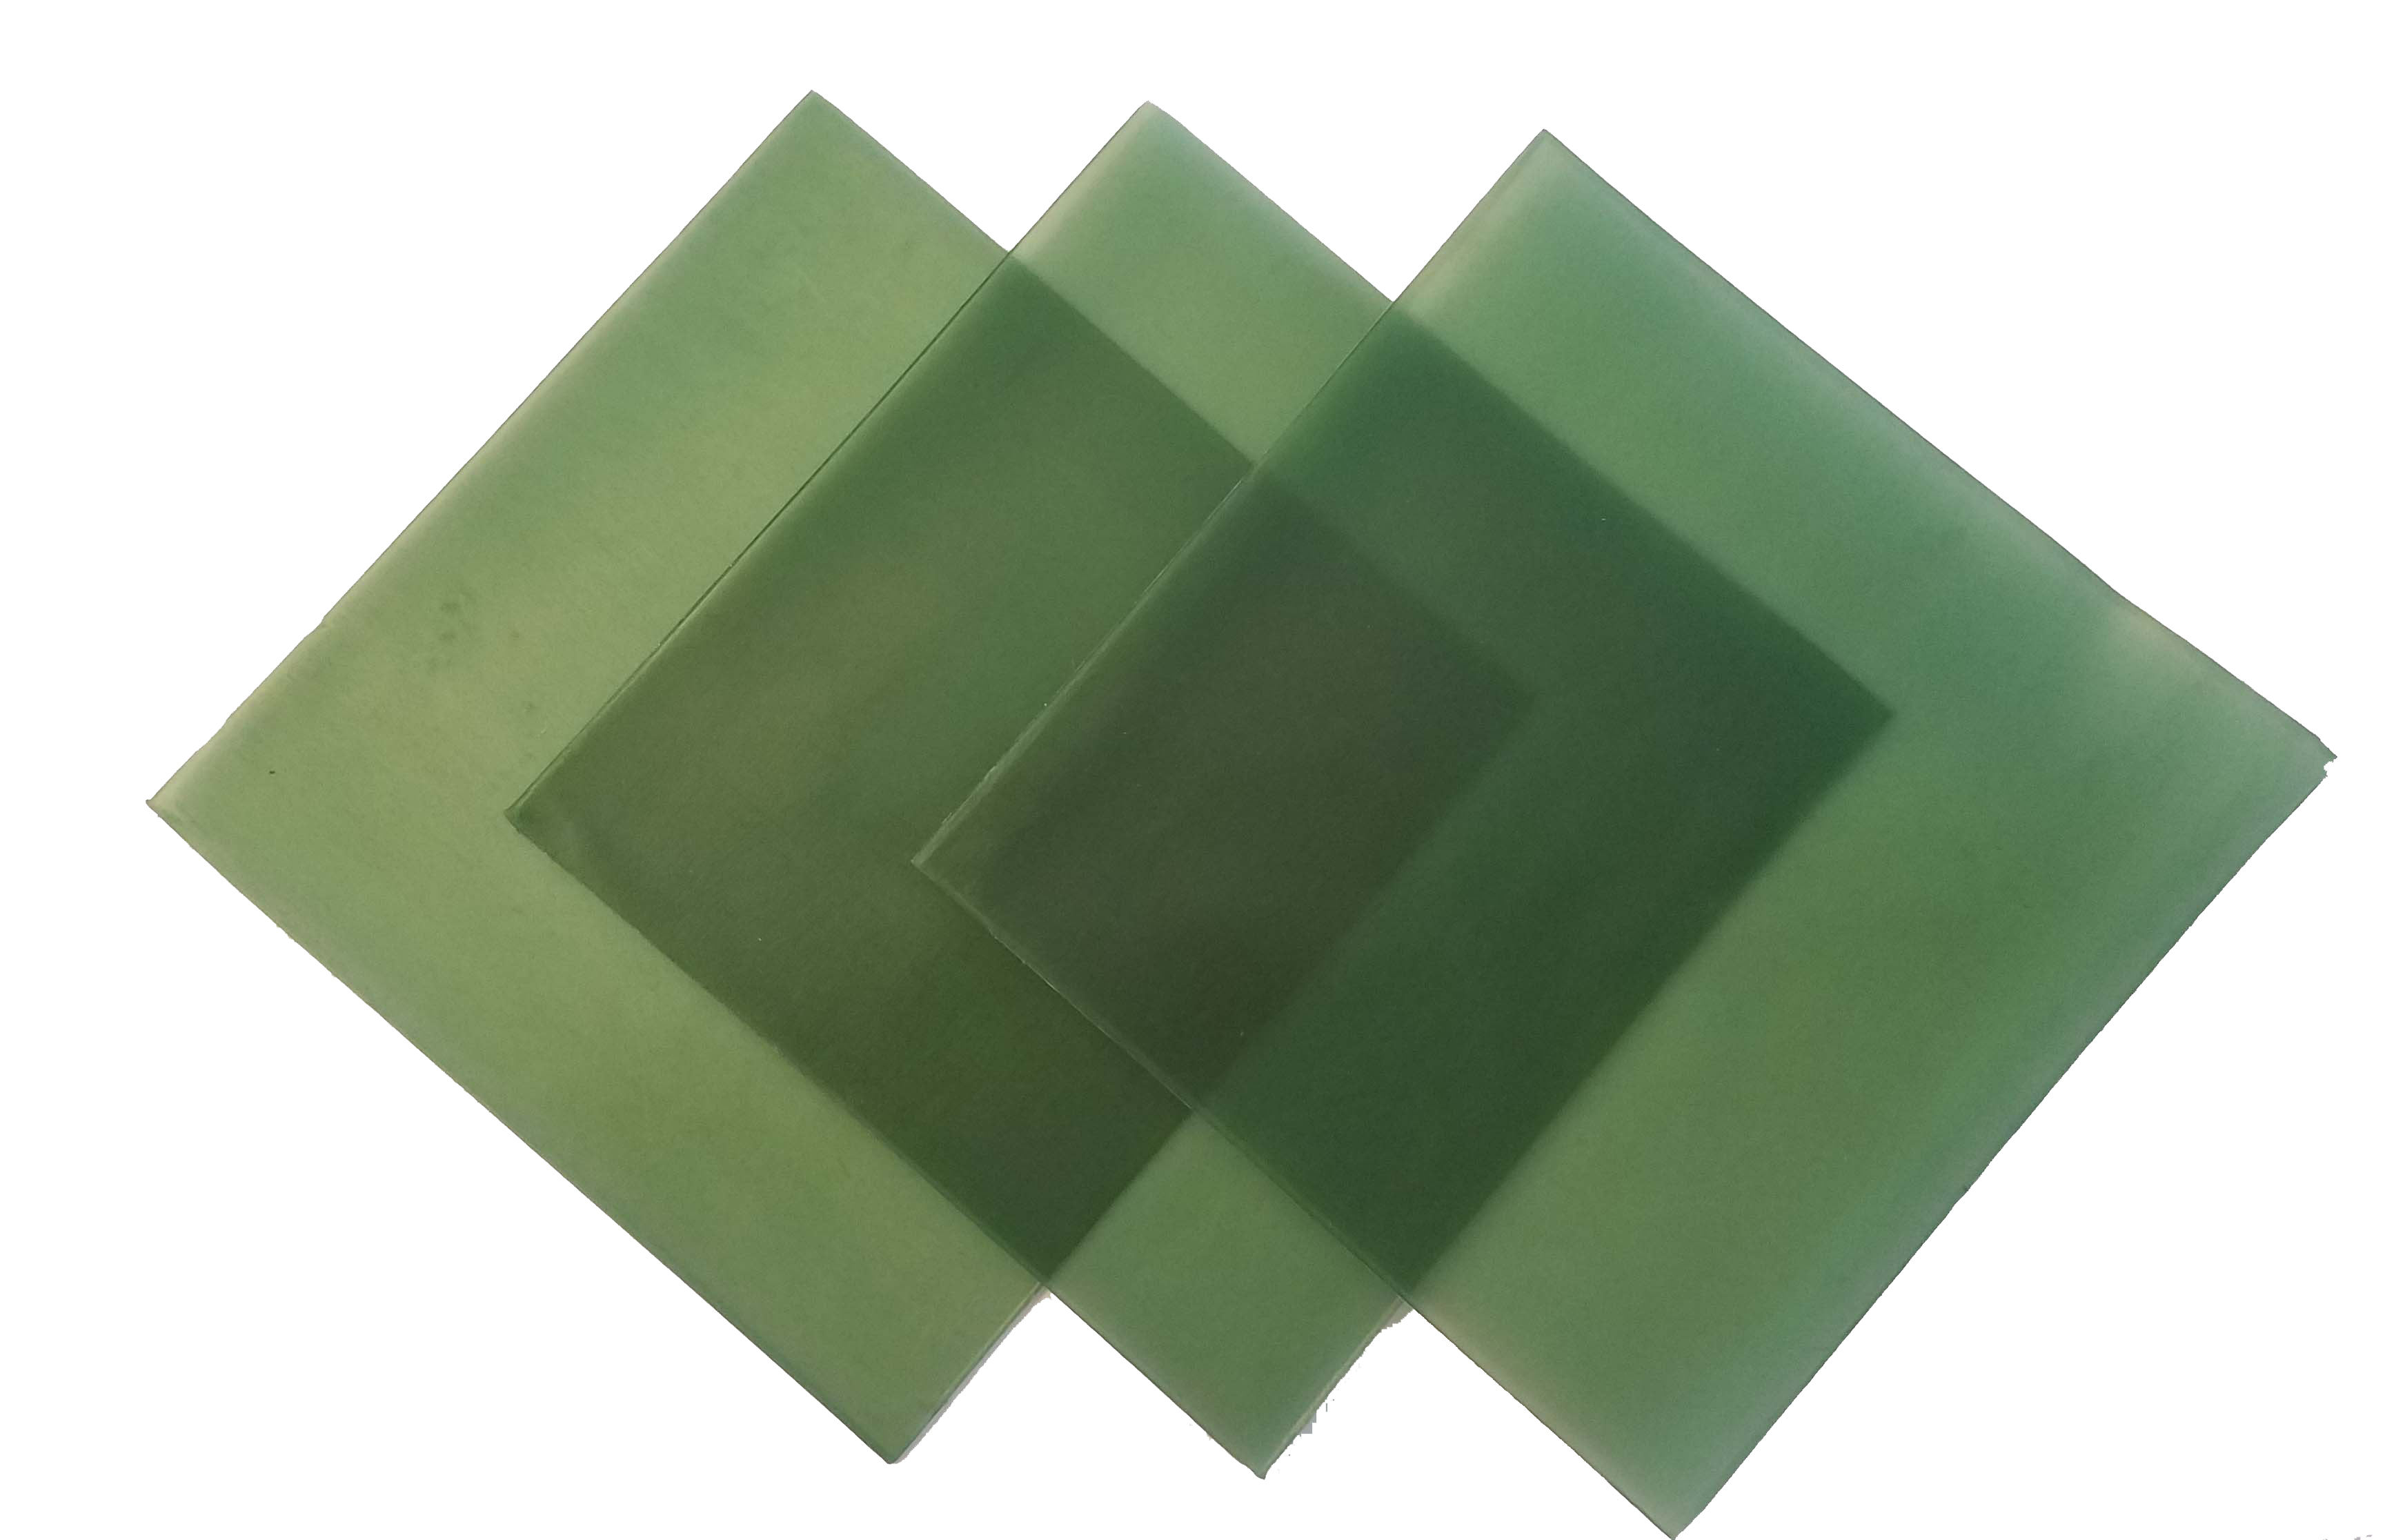 4"x4" sheet wax 20 gauge green